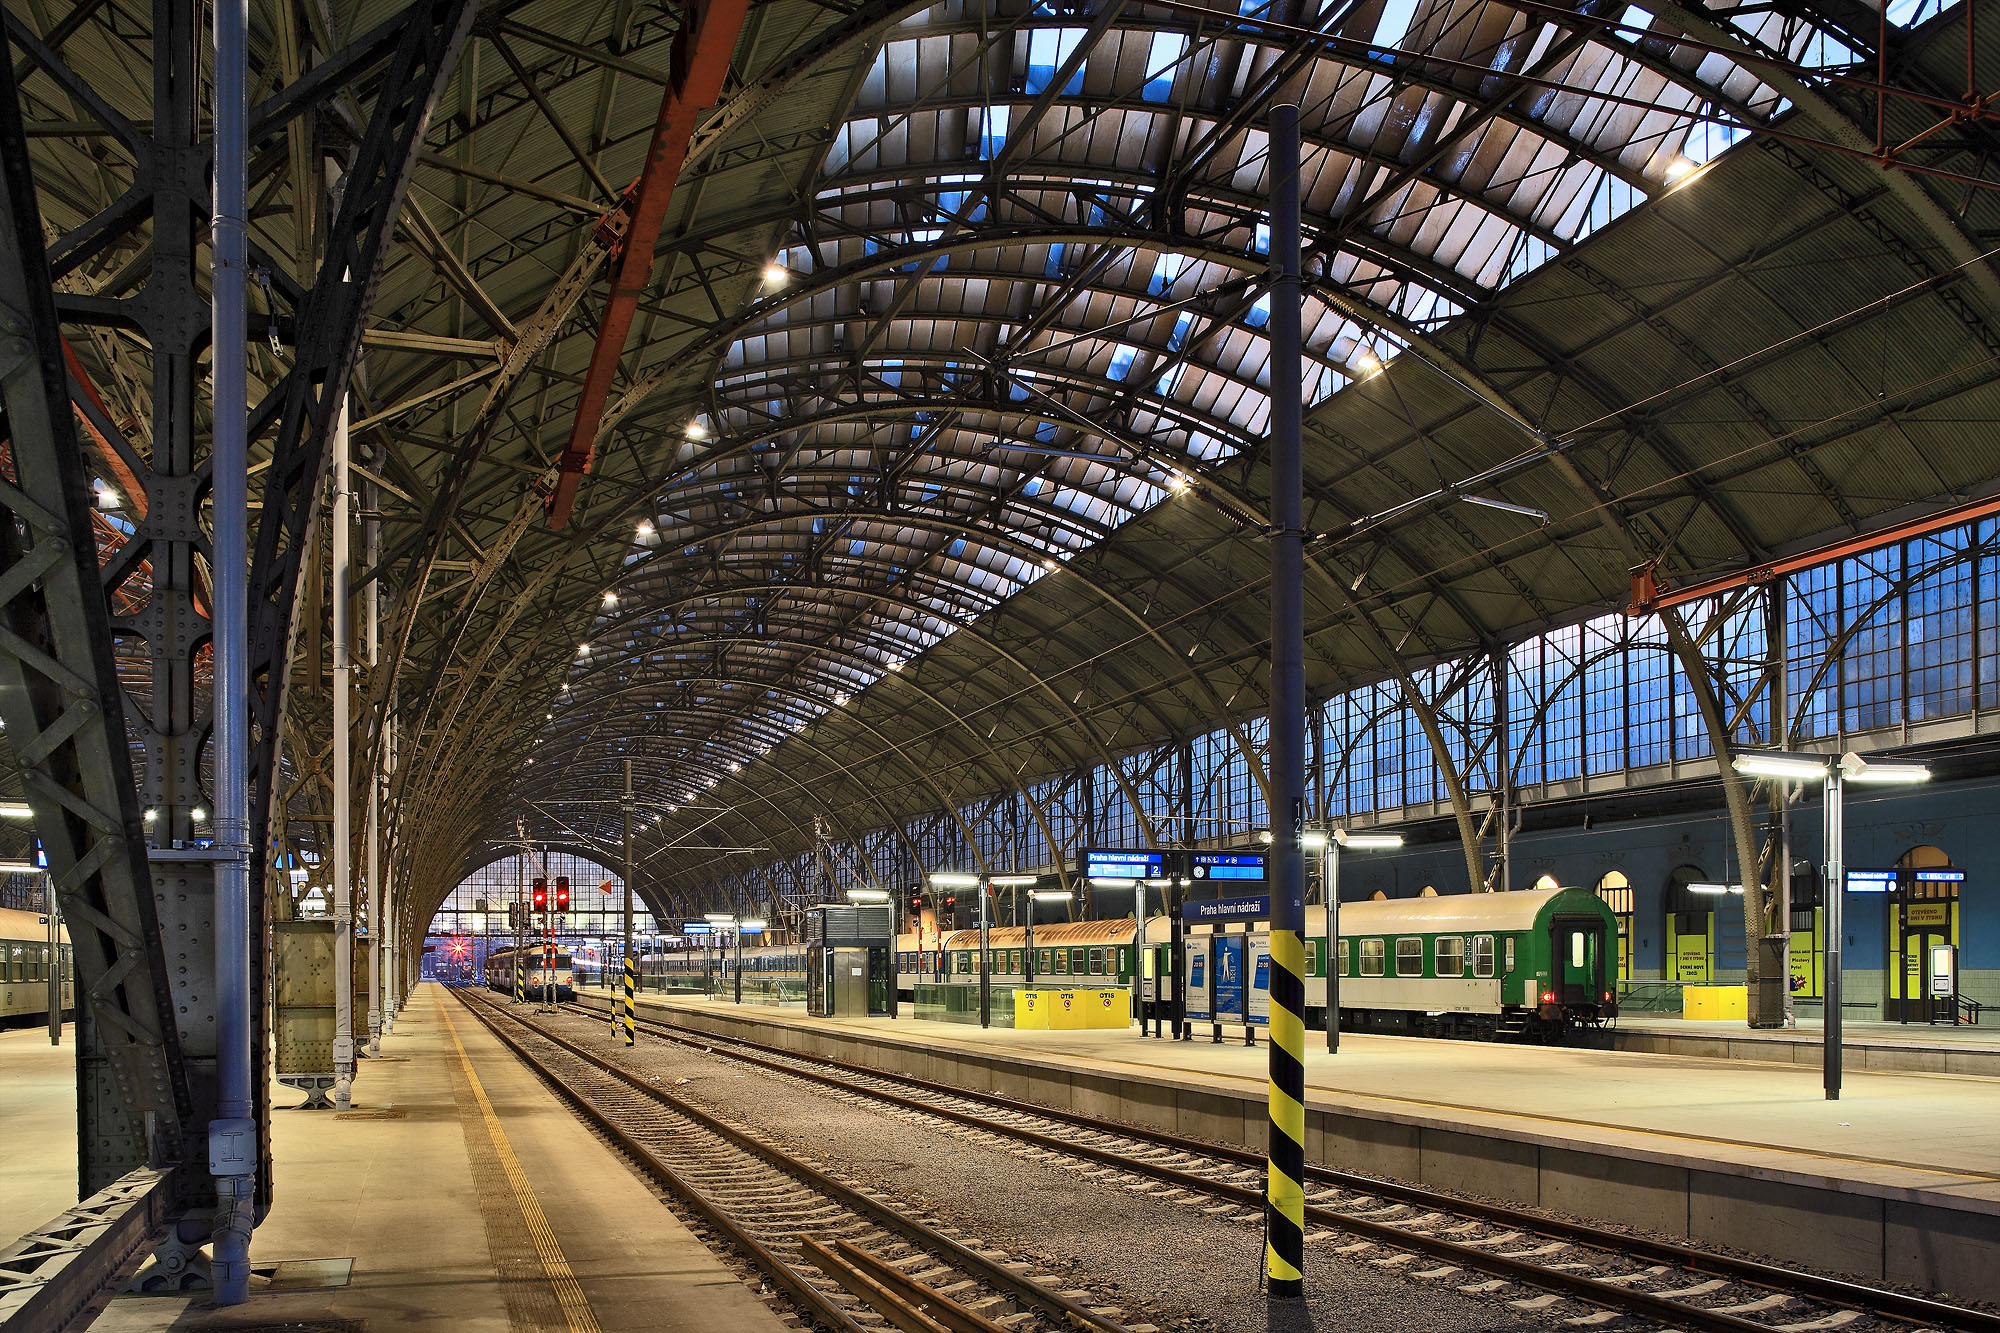 Správa železnic začne s realizací koncepce zvyšování bezpečnosti na regionálních tratích